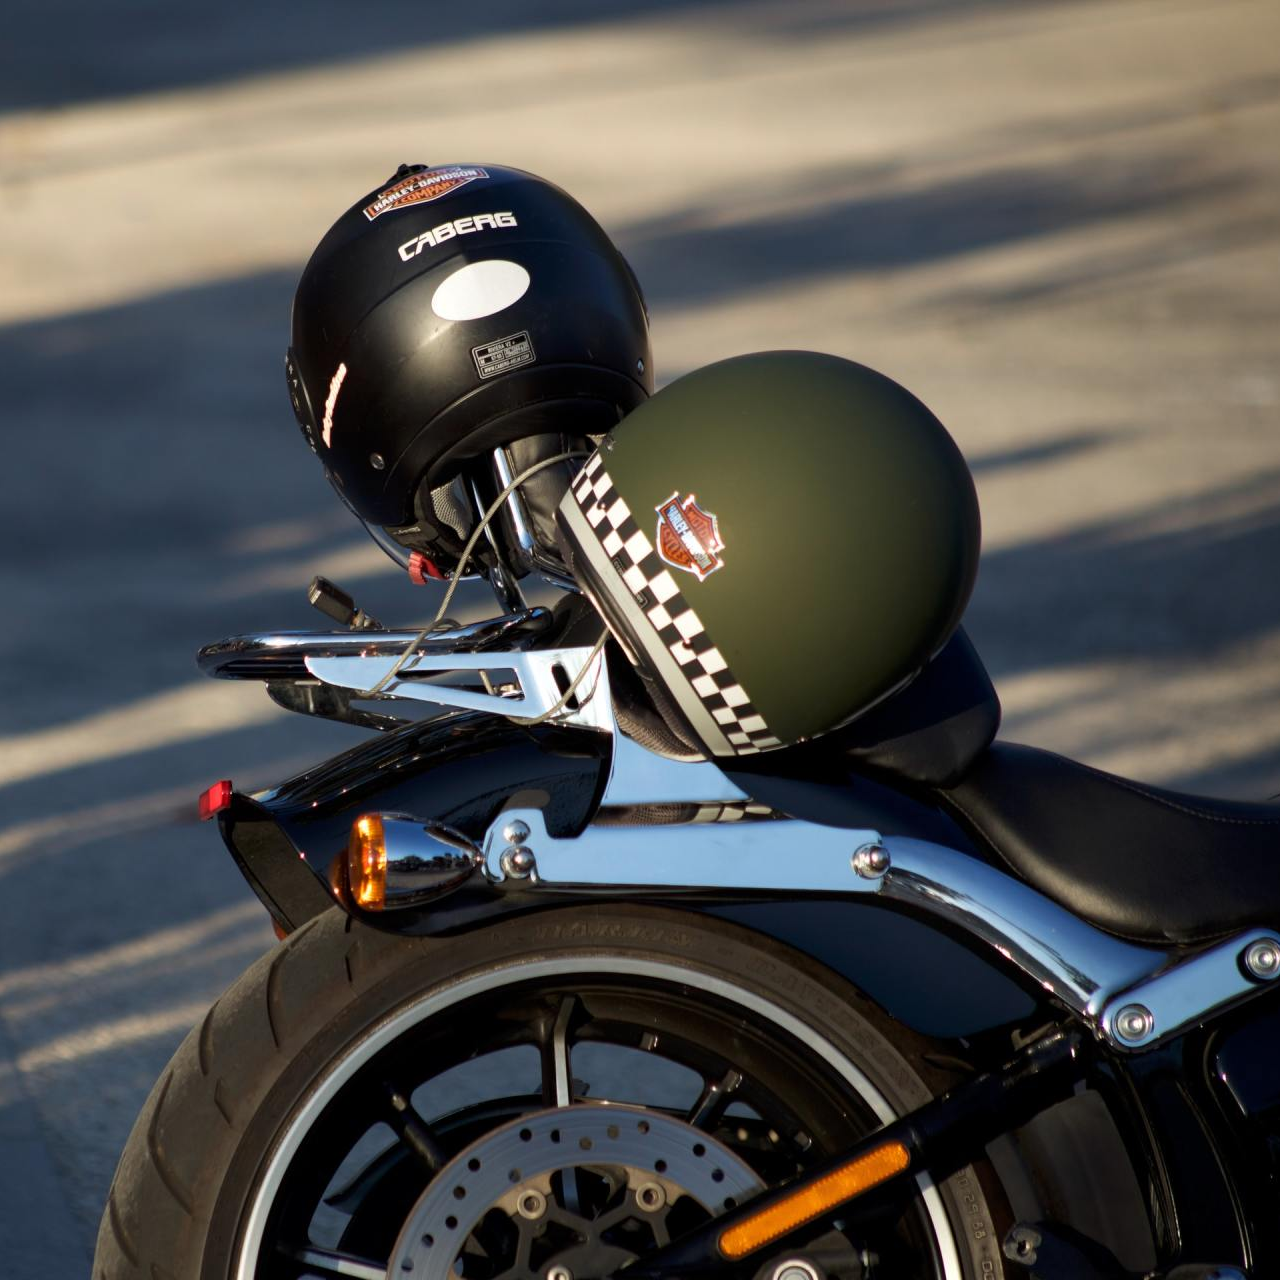 Capacetes de motocicleta colocados nas costas de uma motocicleta